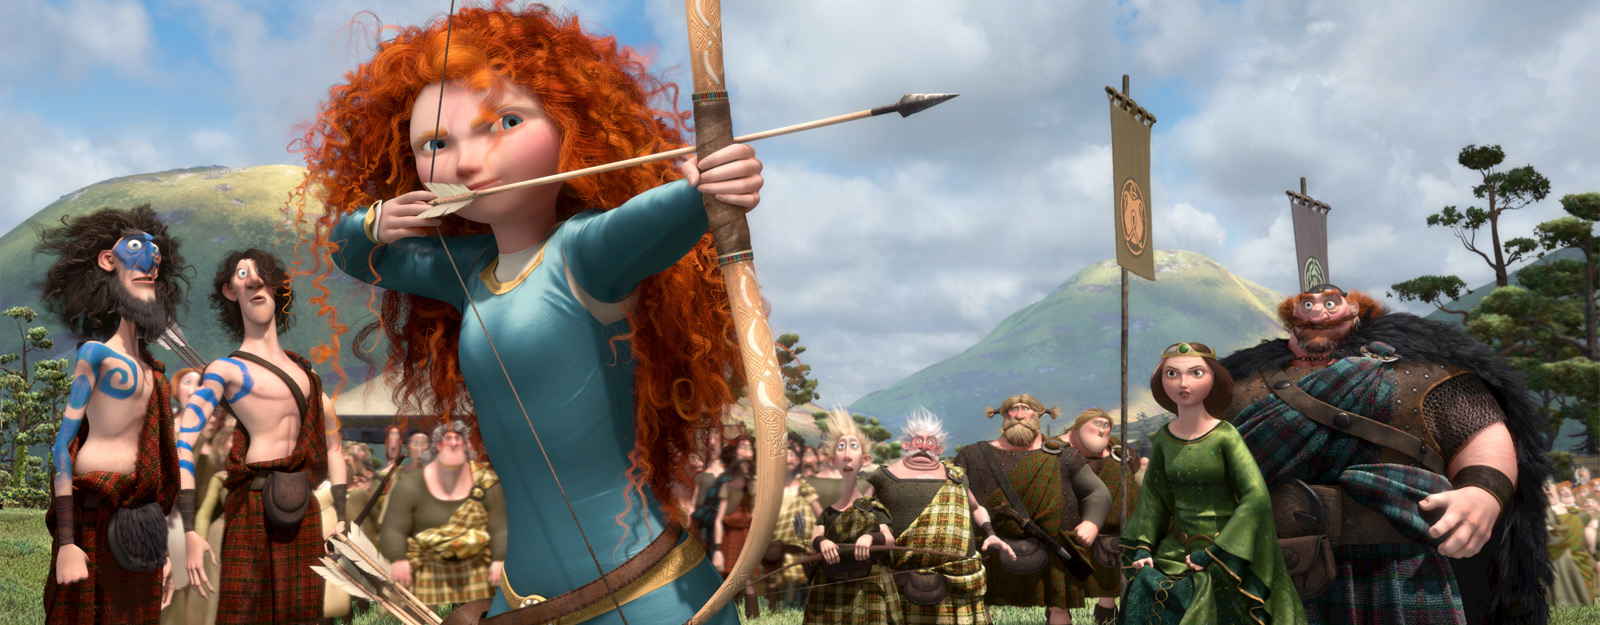 "Ribelle - The Brave", bambini al potere nel film d'animazione gender - The brave Disney 2 - Gay.it